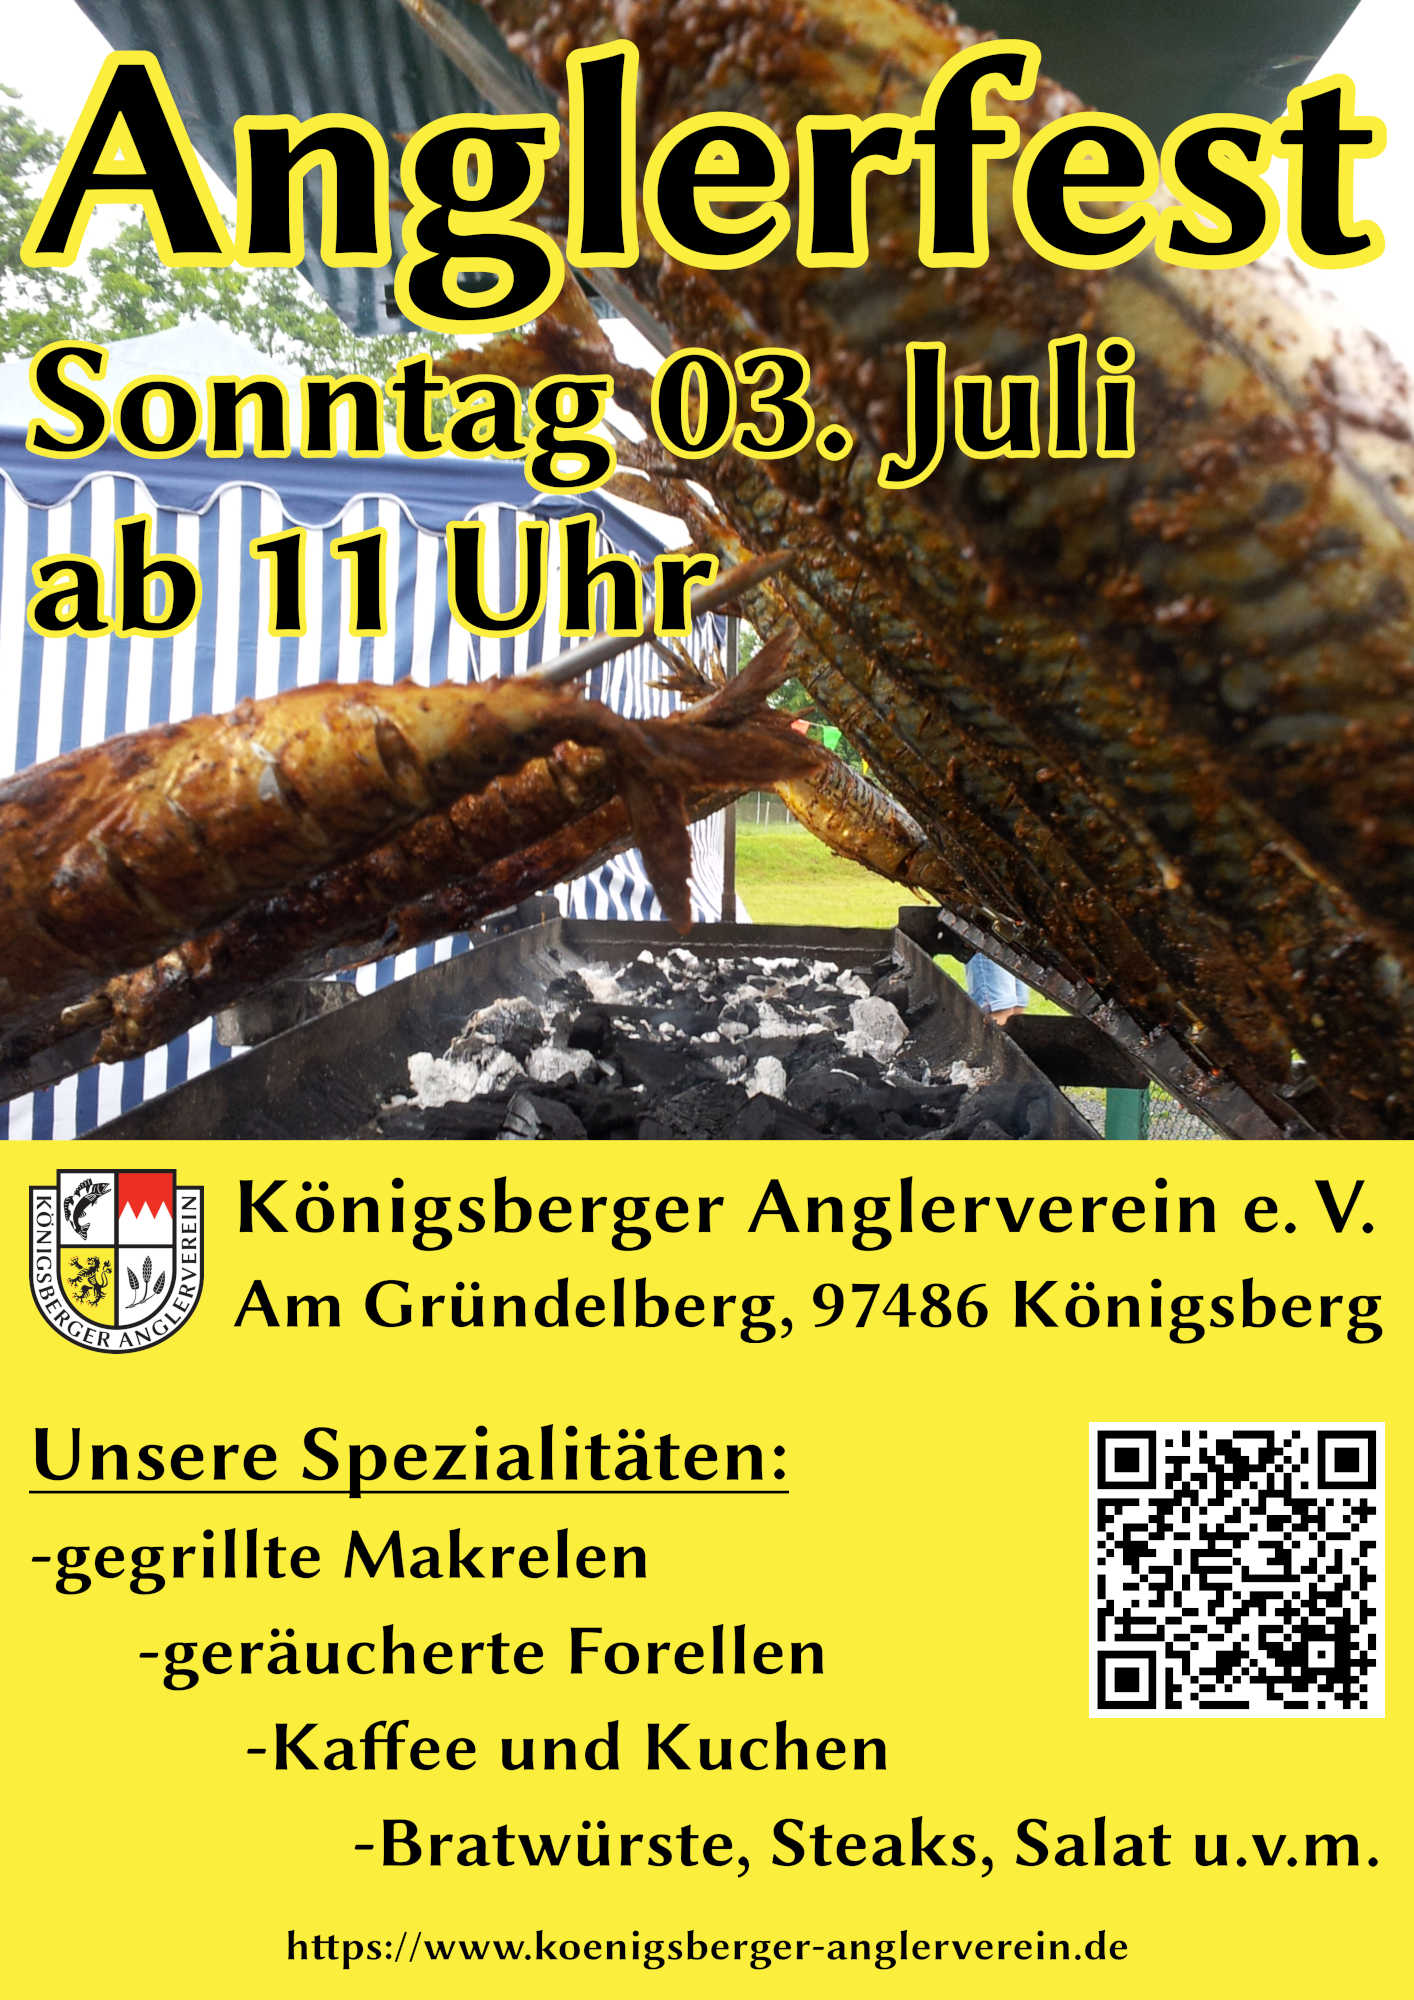 news/img/Anglerfest des Königsberger Anglervereins e. V. am 03. Juli, Am Gründelberg 97486 Königsberg